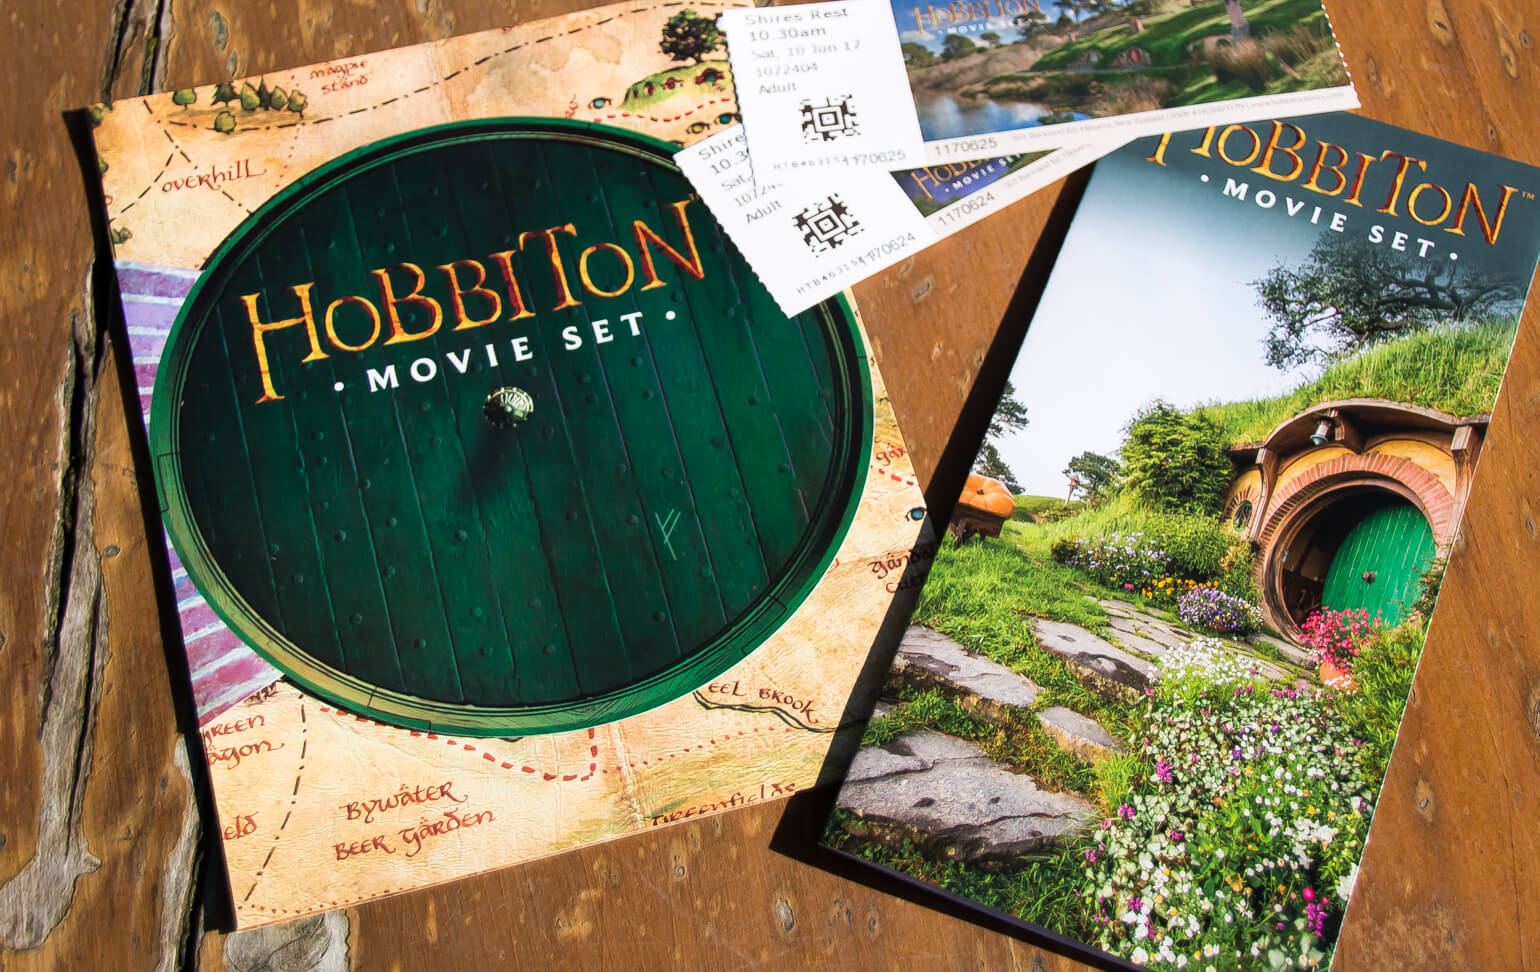 Hobbiton flyers